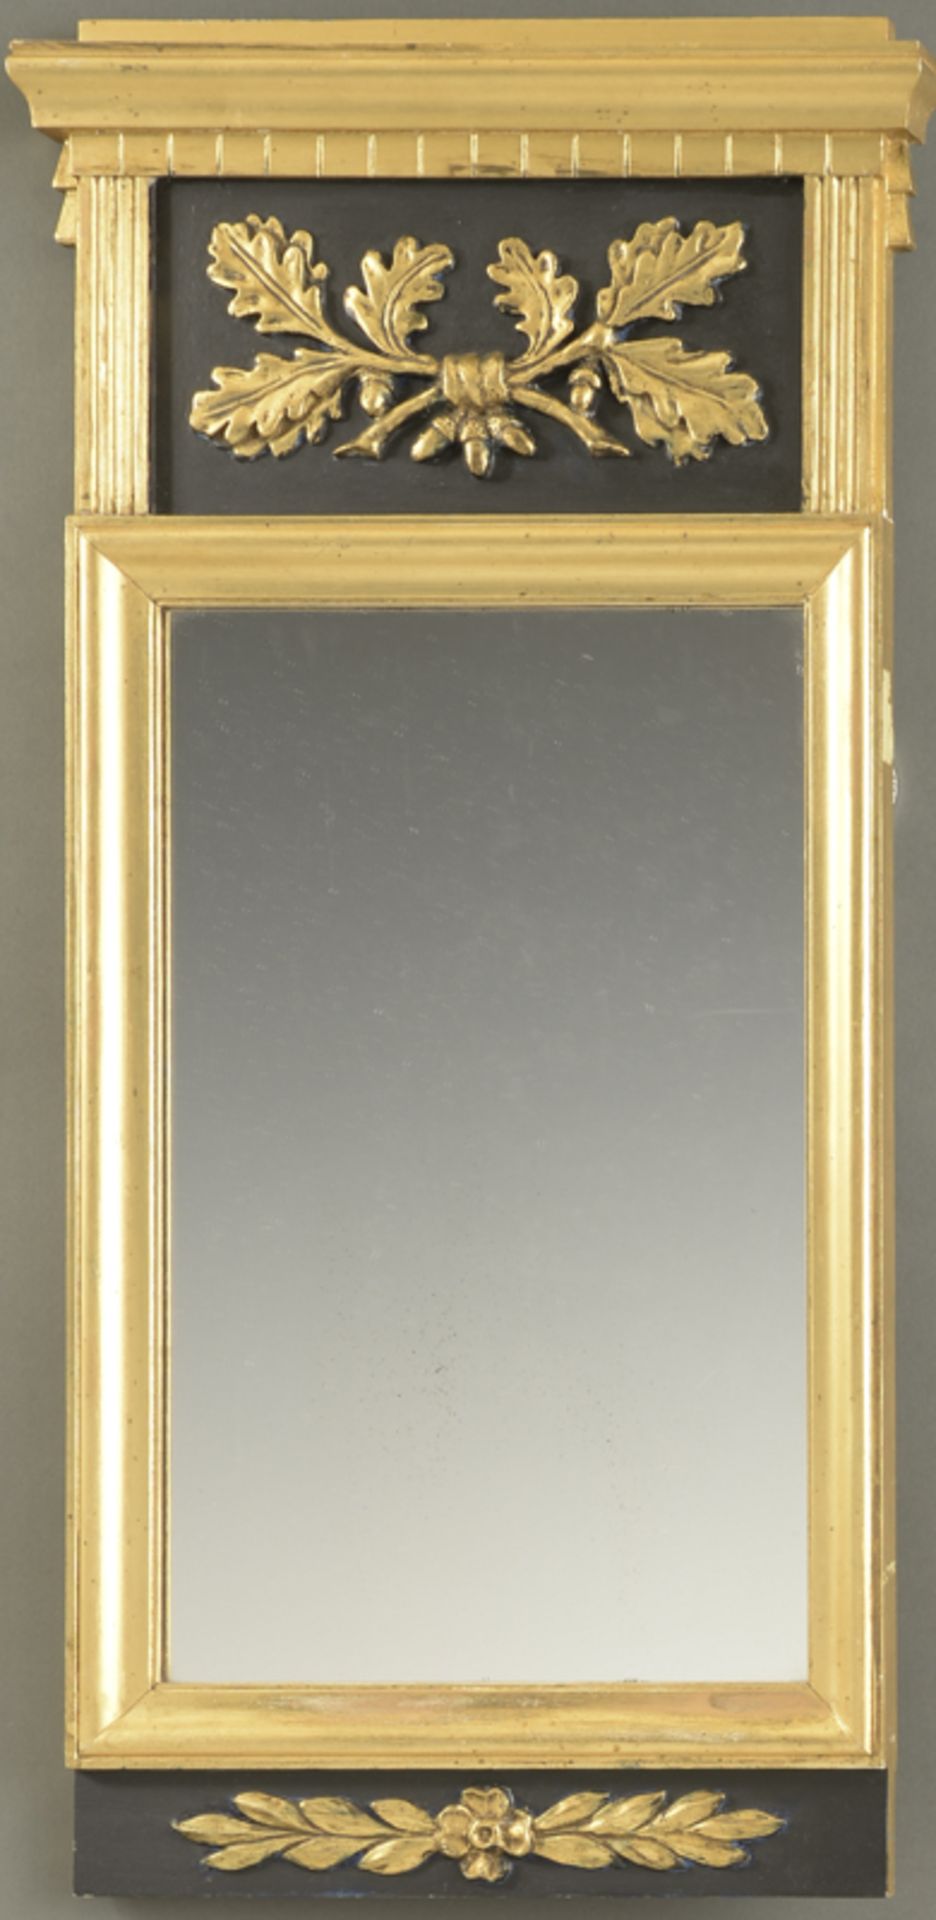 Spiegel im gustavianischen Stil, Schweden um 1900schwarz-gold gefaßt, mit Eichenlaub dekoriert,